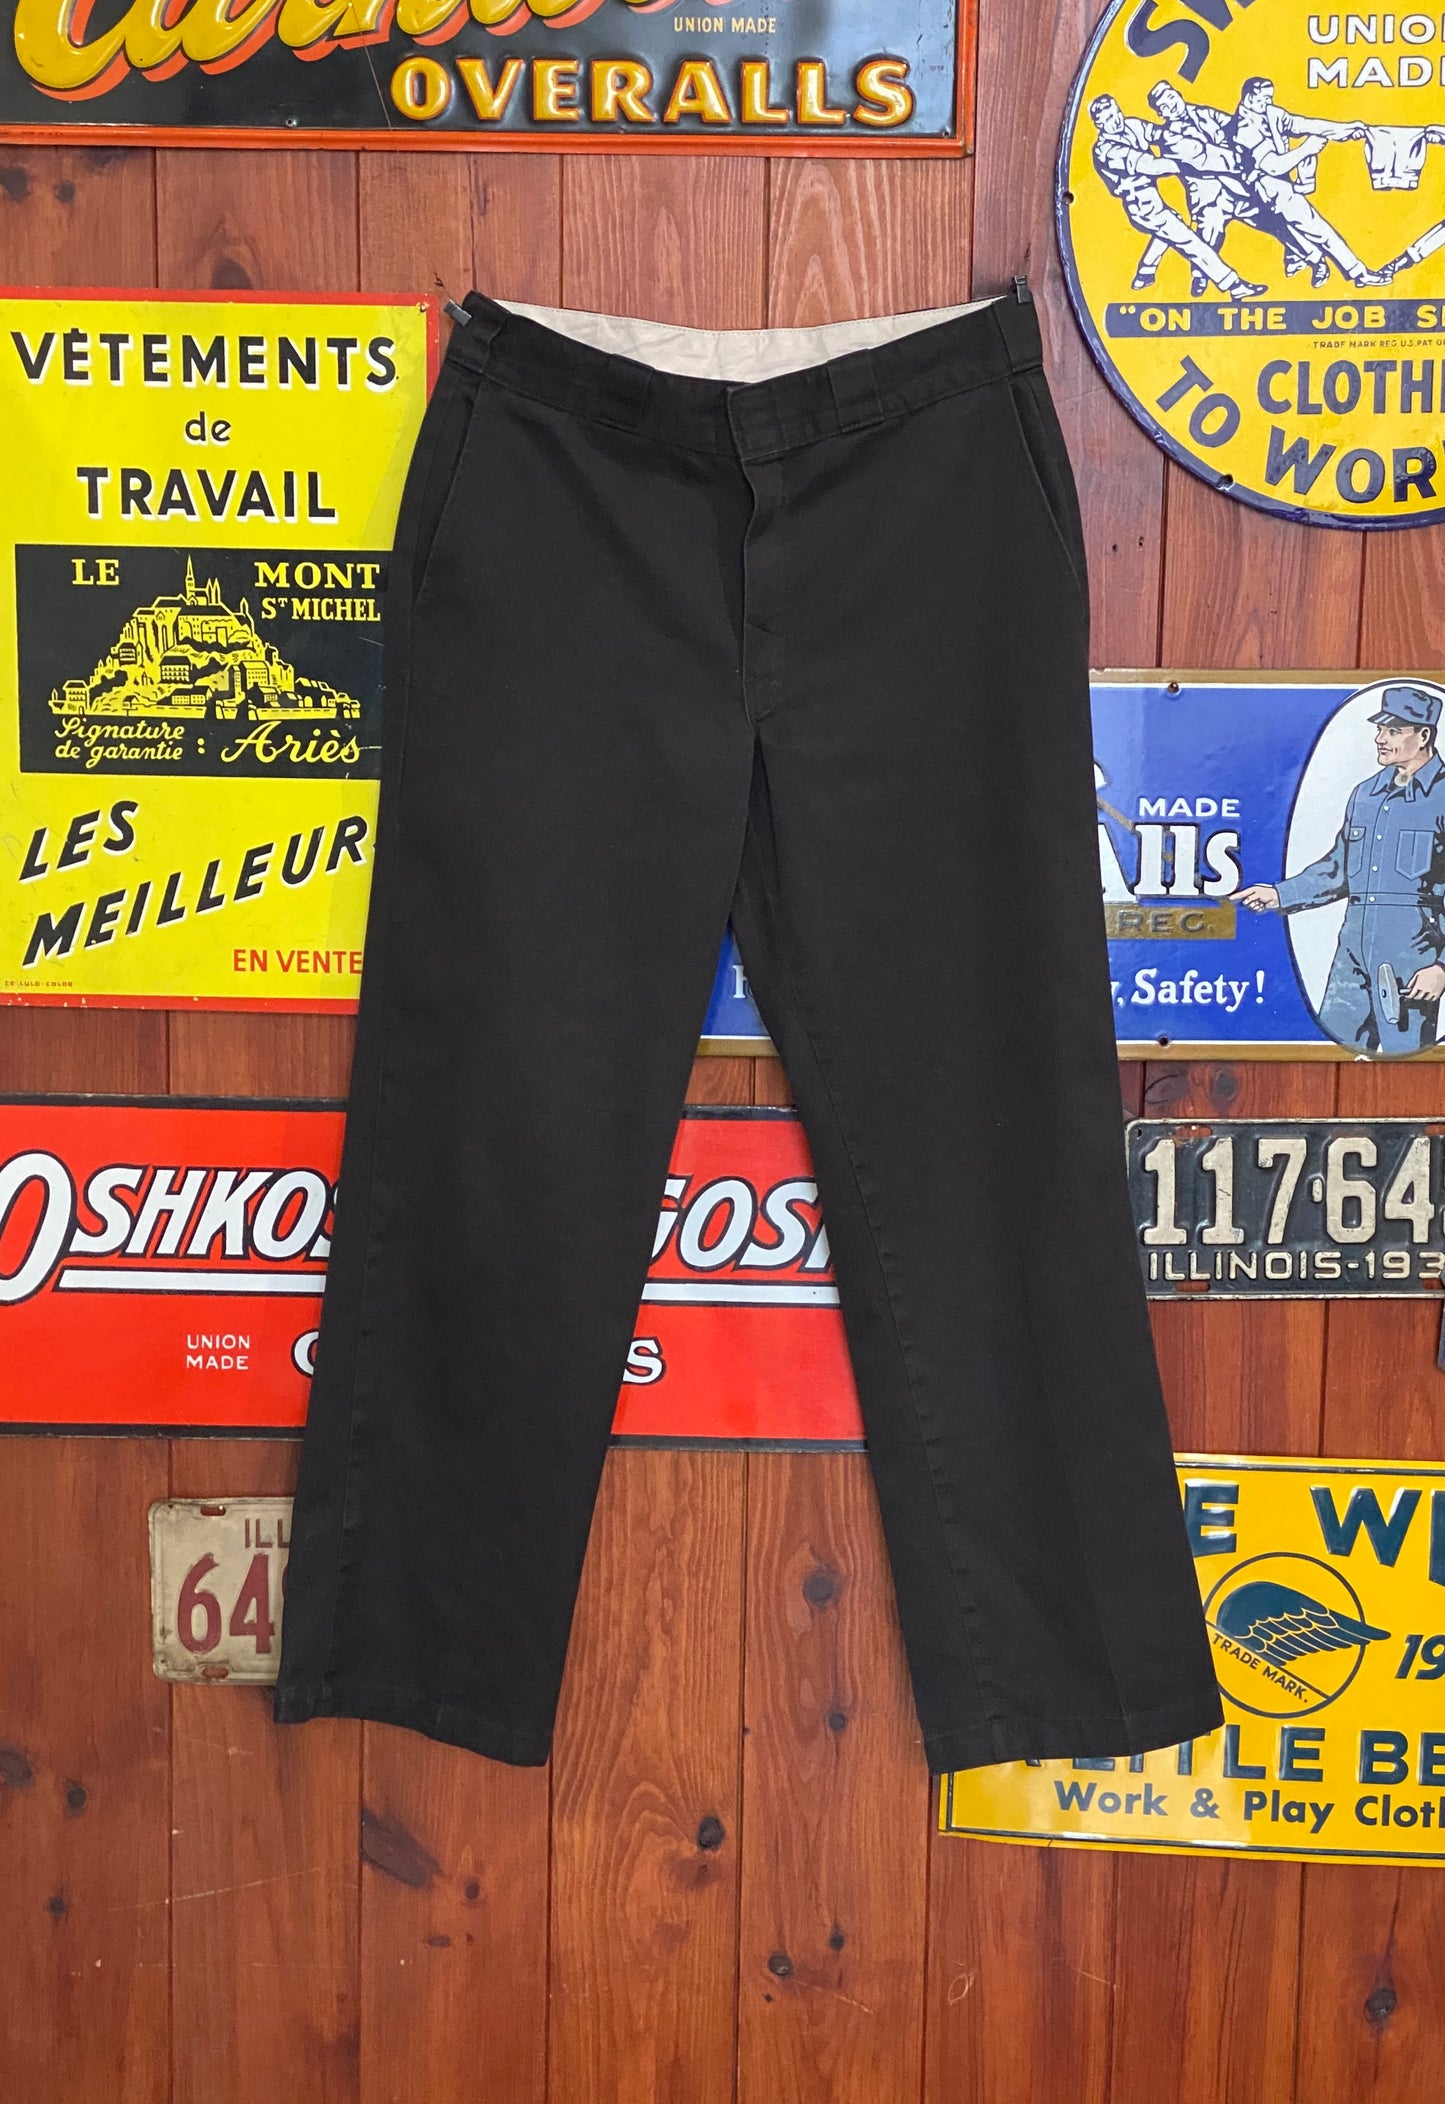 Black Vintage Dickies pants model 874 size 33X30